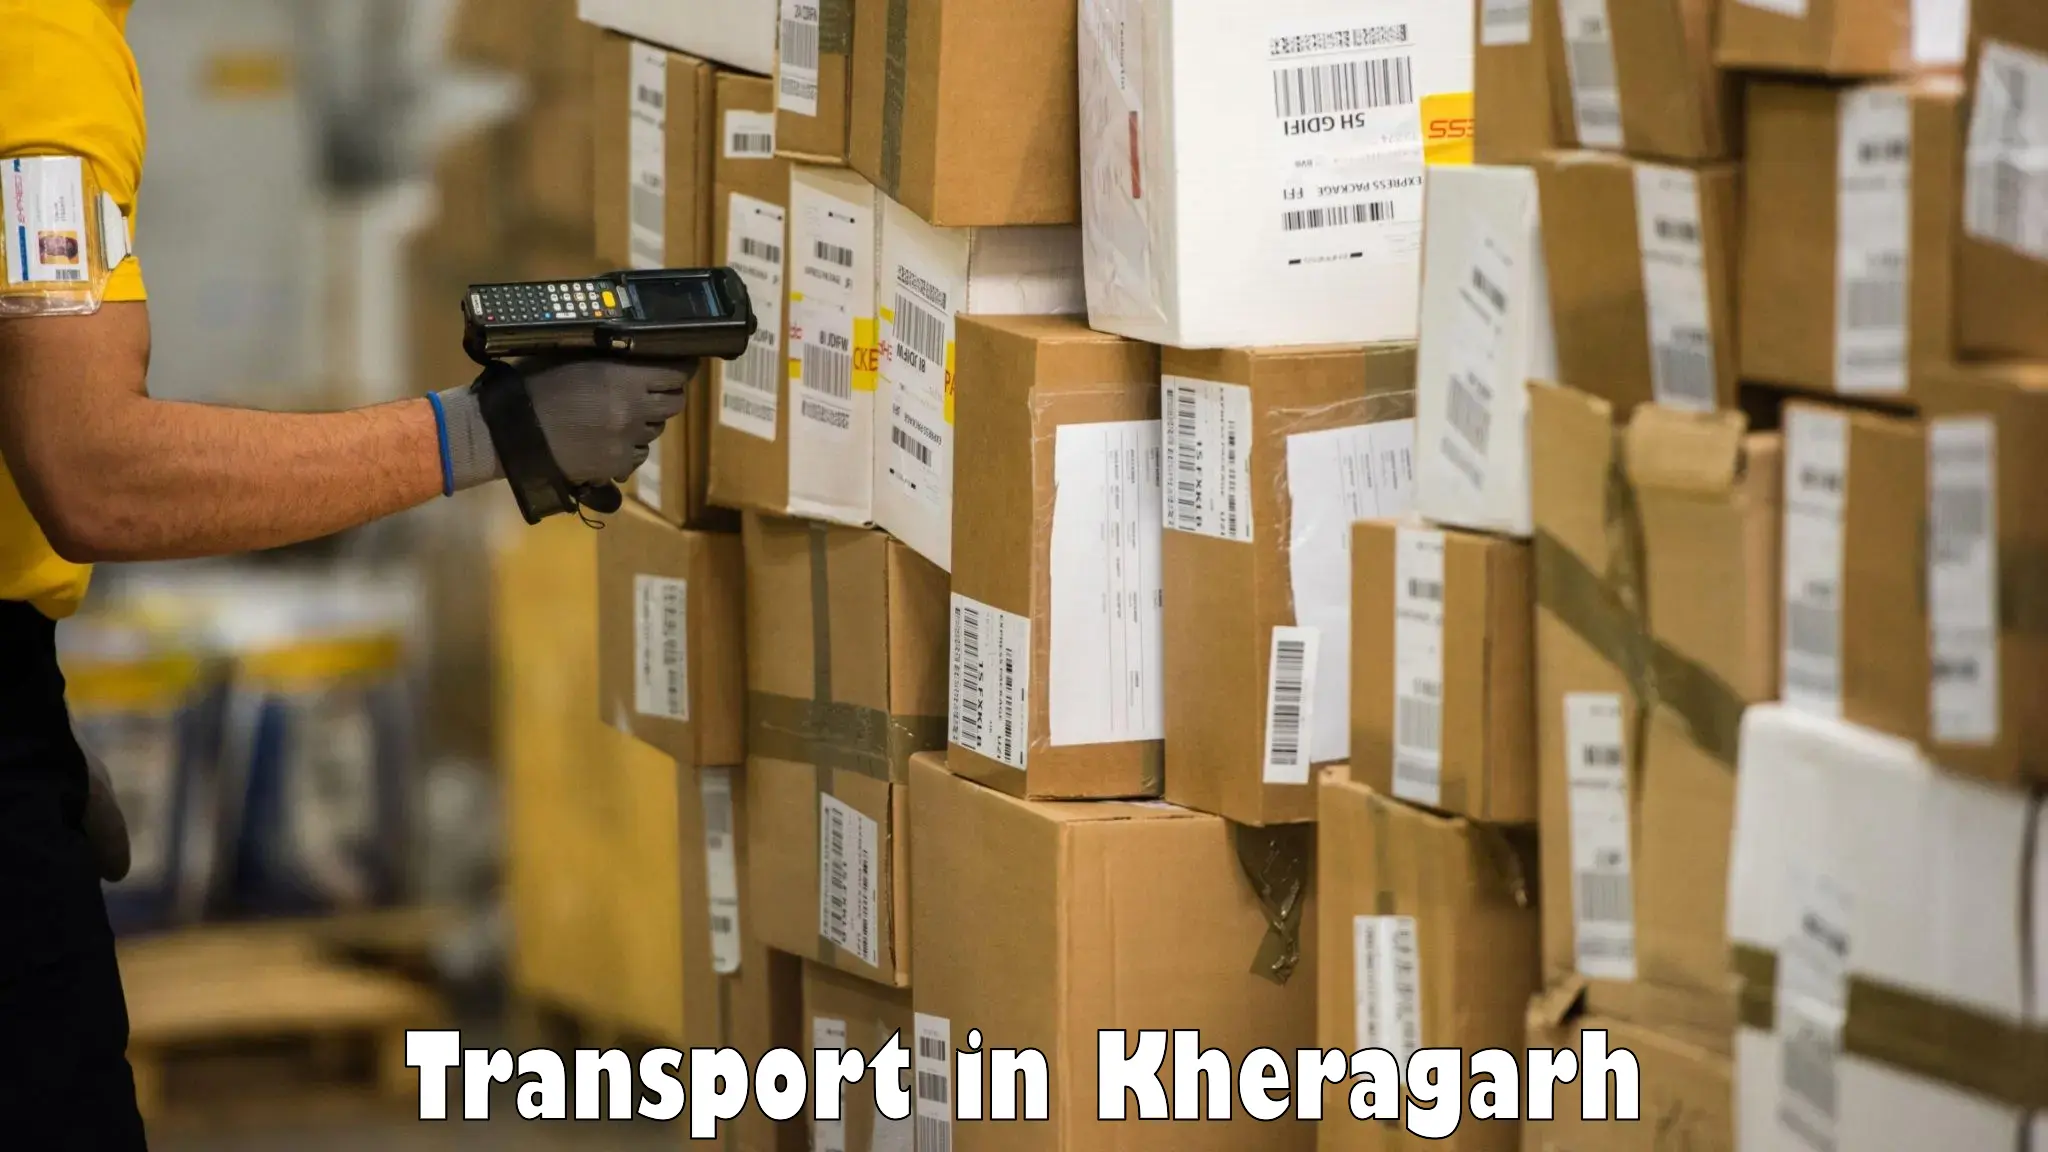 Truck transport companies in India in Kheragarh